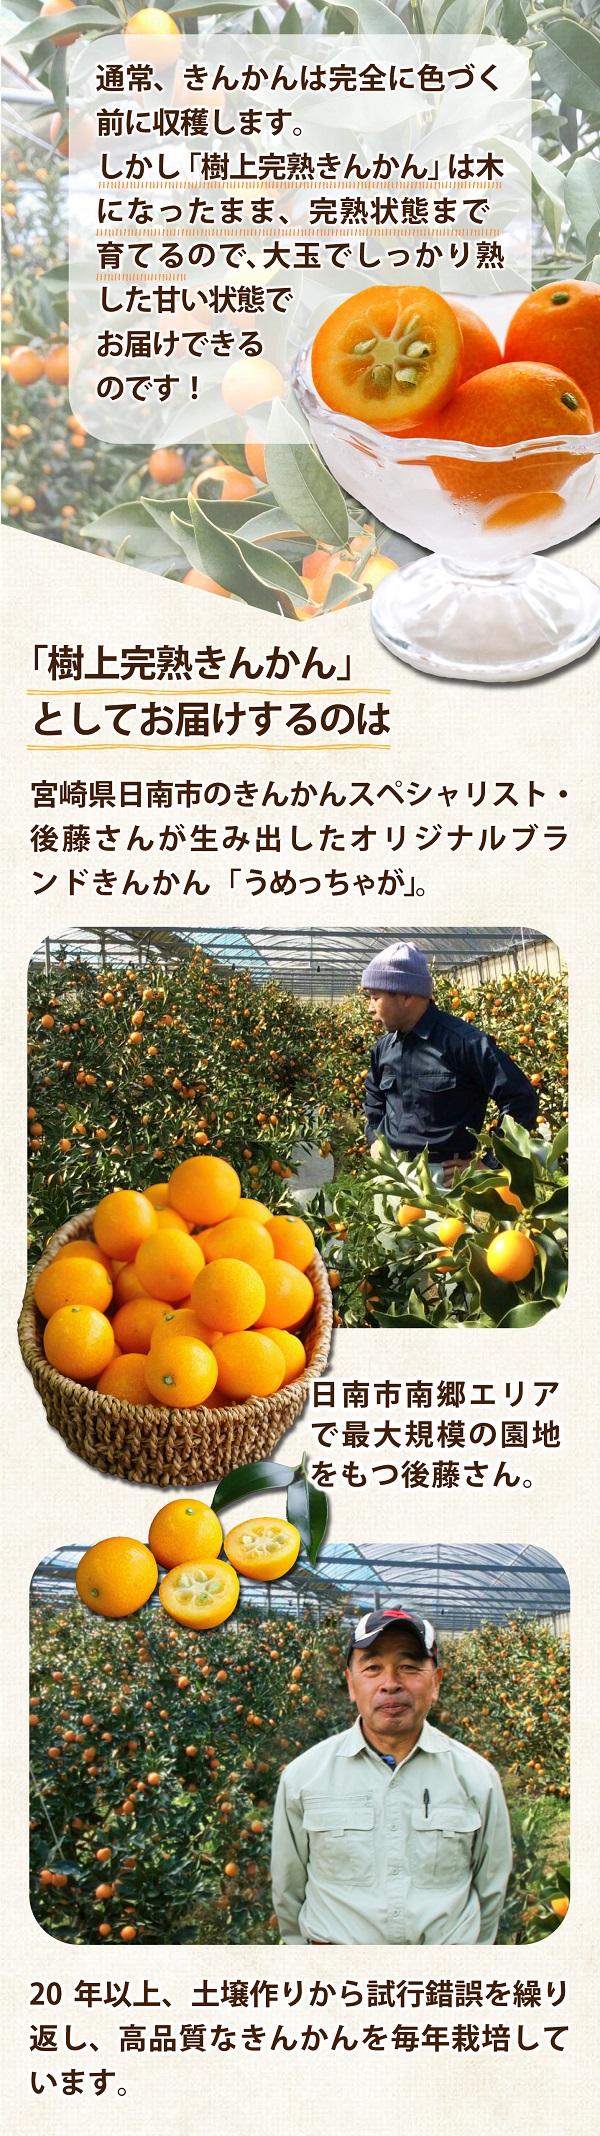 送料無料】宮崎県産 きんかん 樹上完熟 金柑 うめっちゃが 3箱 (約3kg